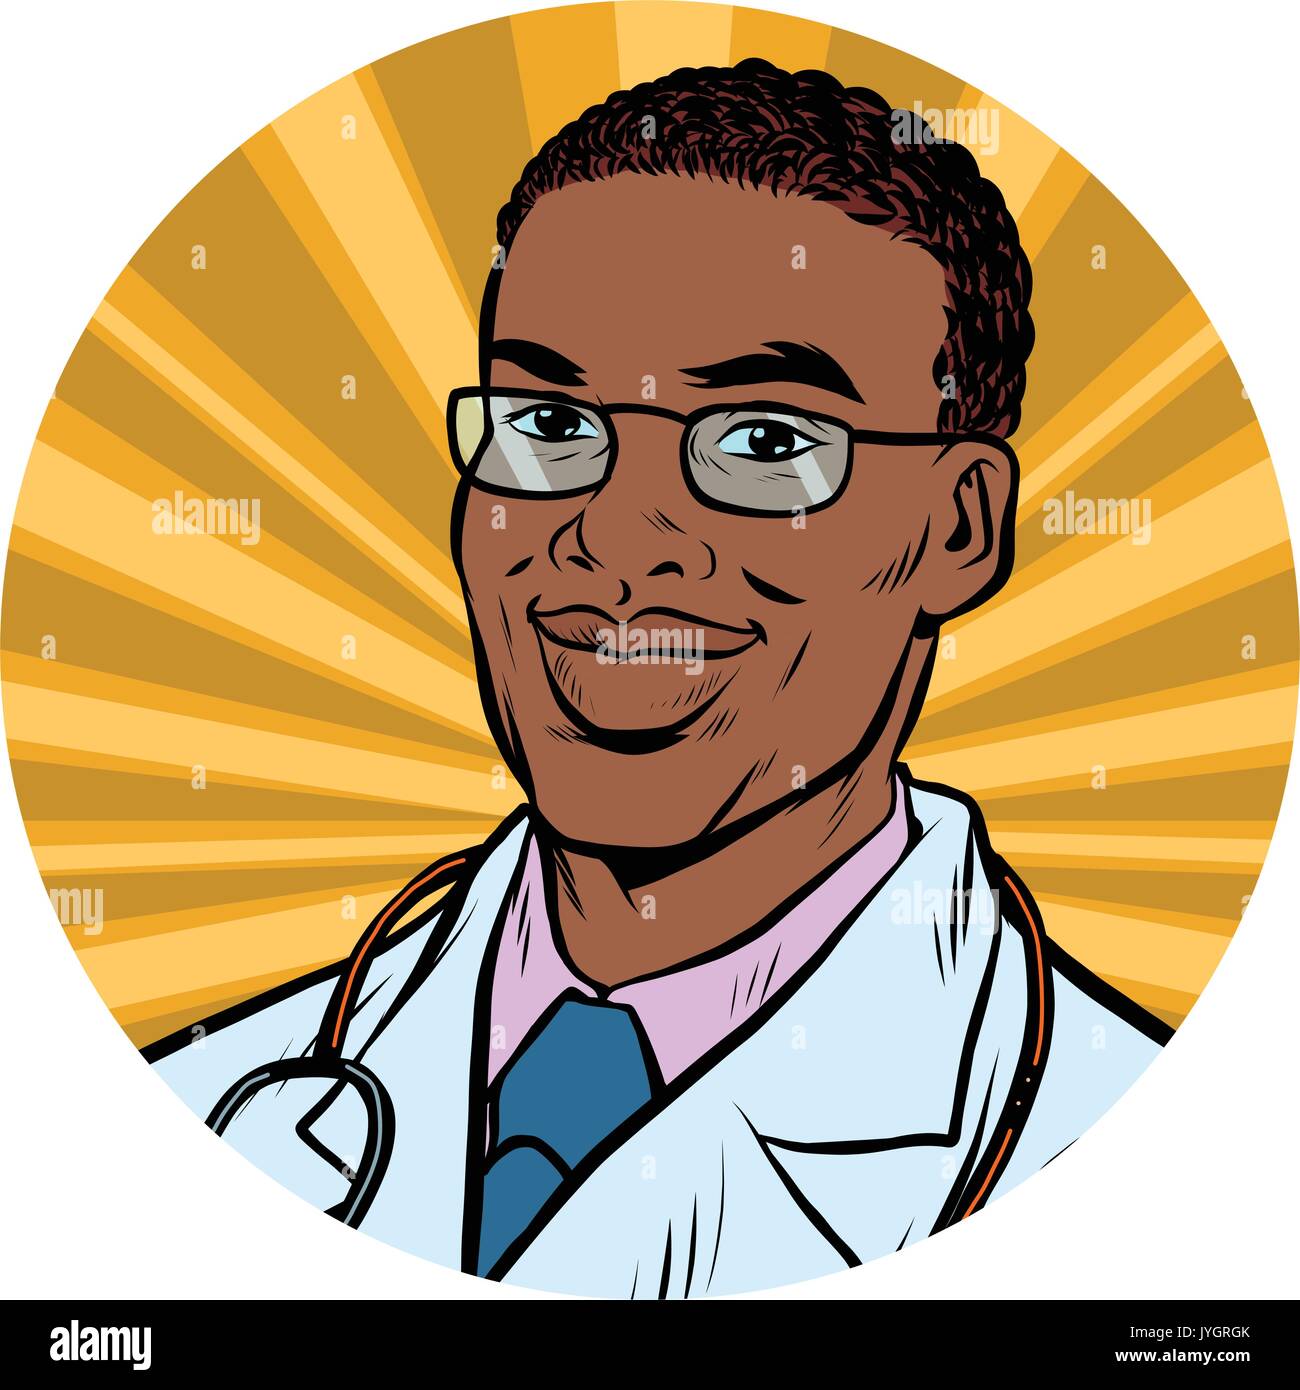 Maschio nero medico americano africano arte pop avatar icona carattere Illustrazione Vettoriale